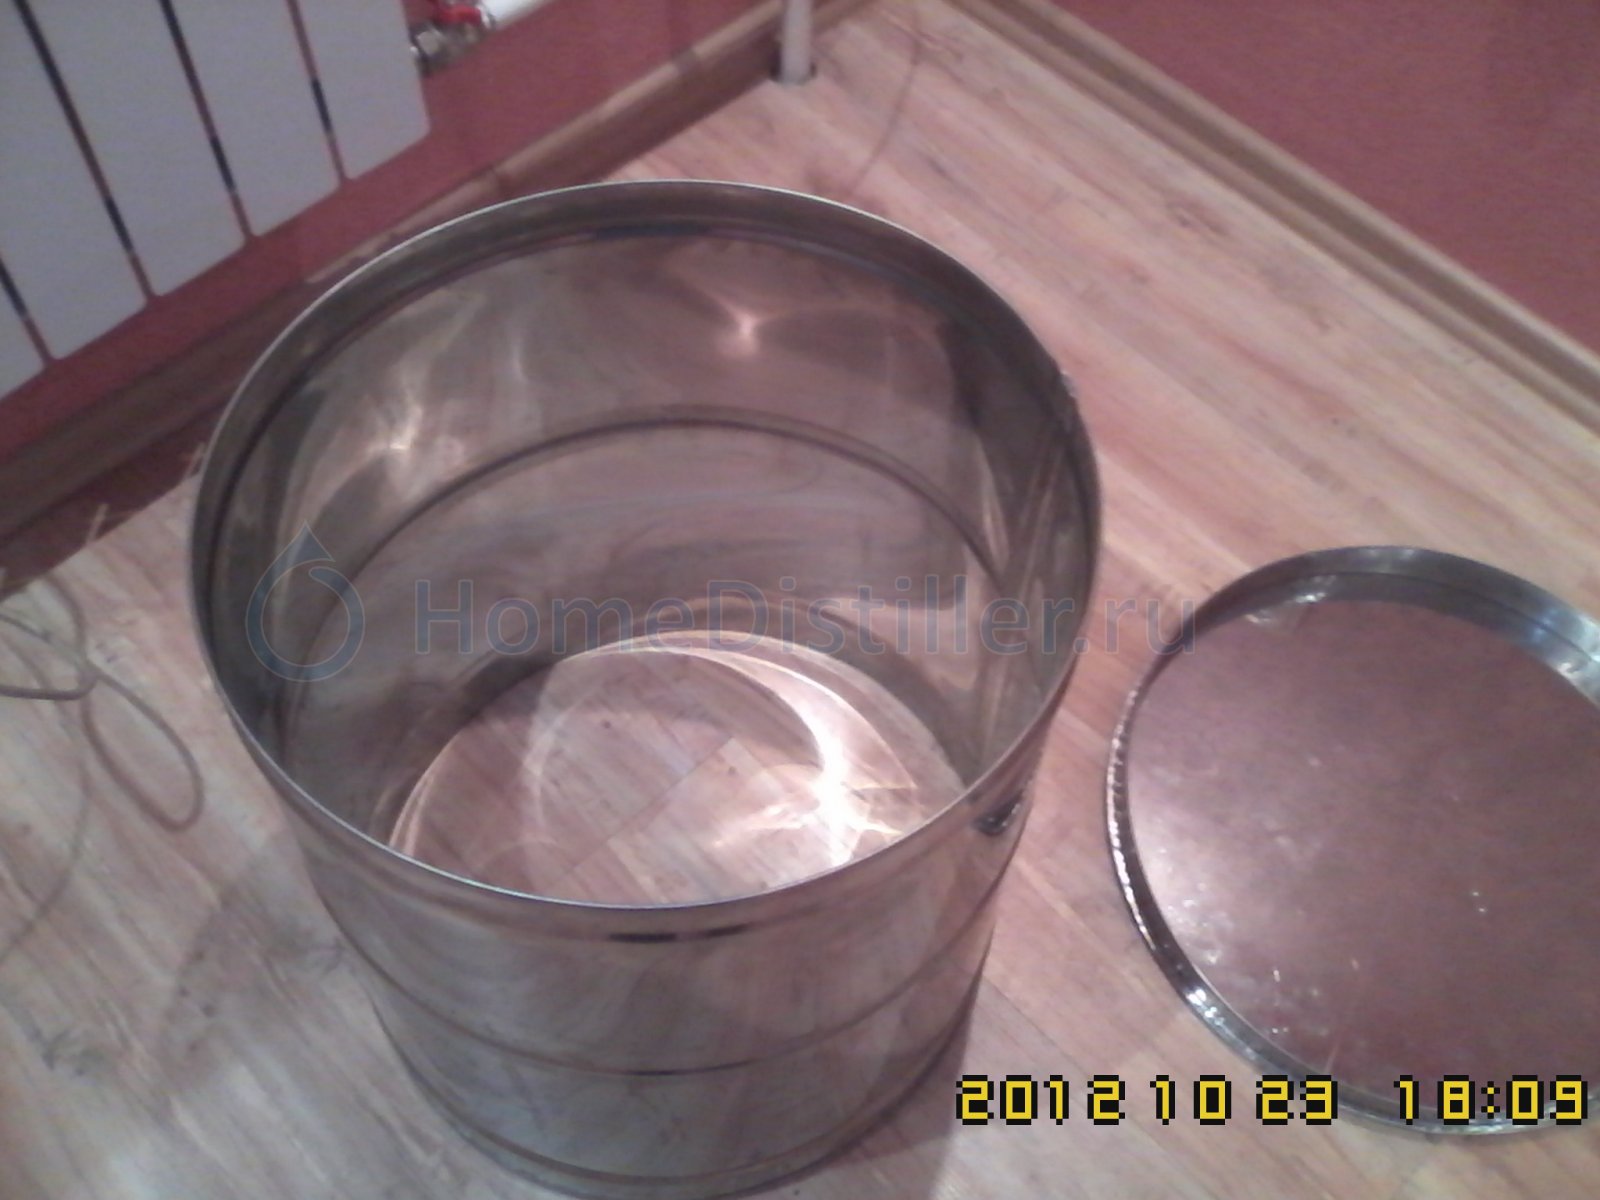 patrybokskrishkoi.jpg Изготовление варочника для пива на 120 литров